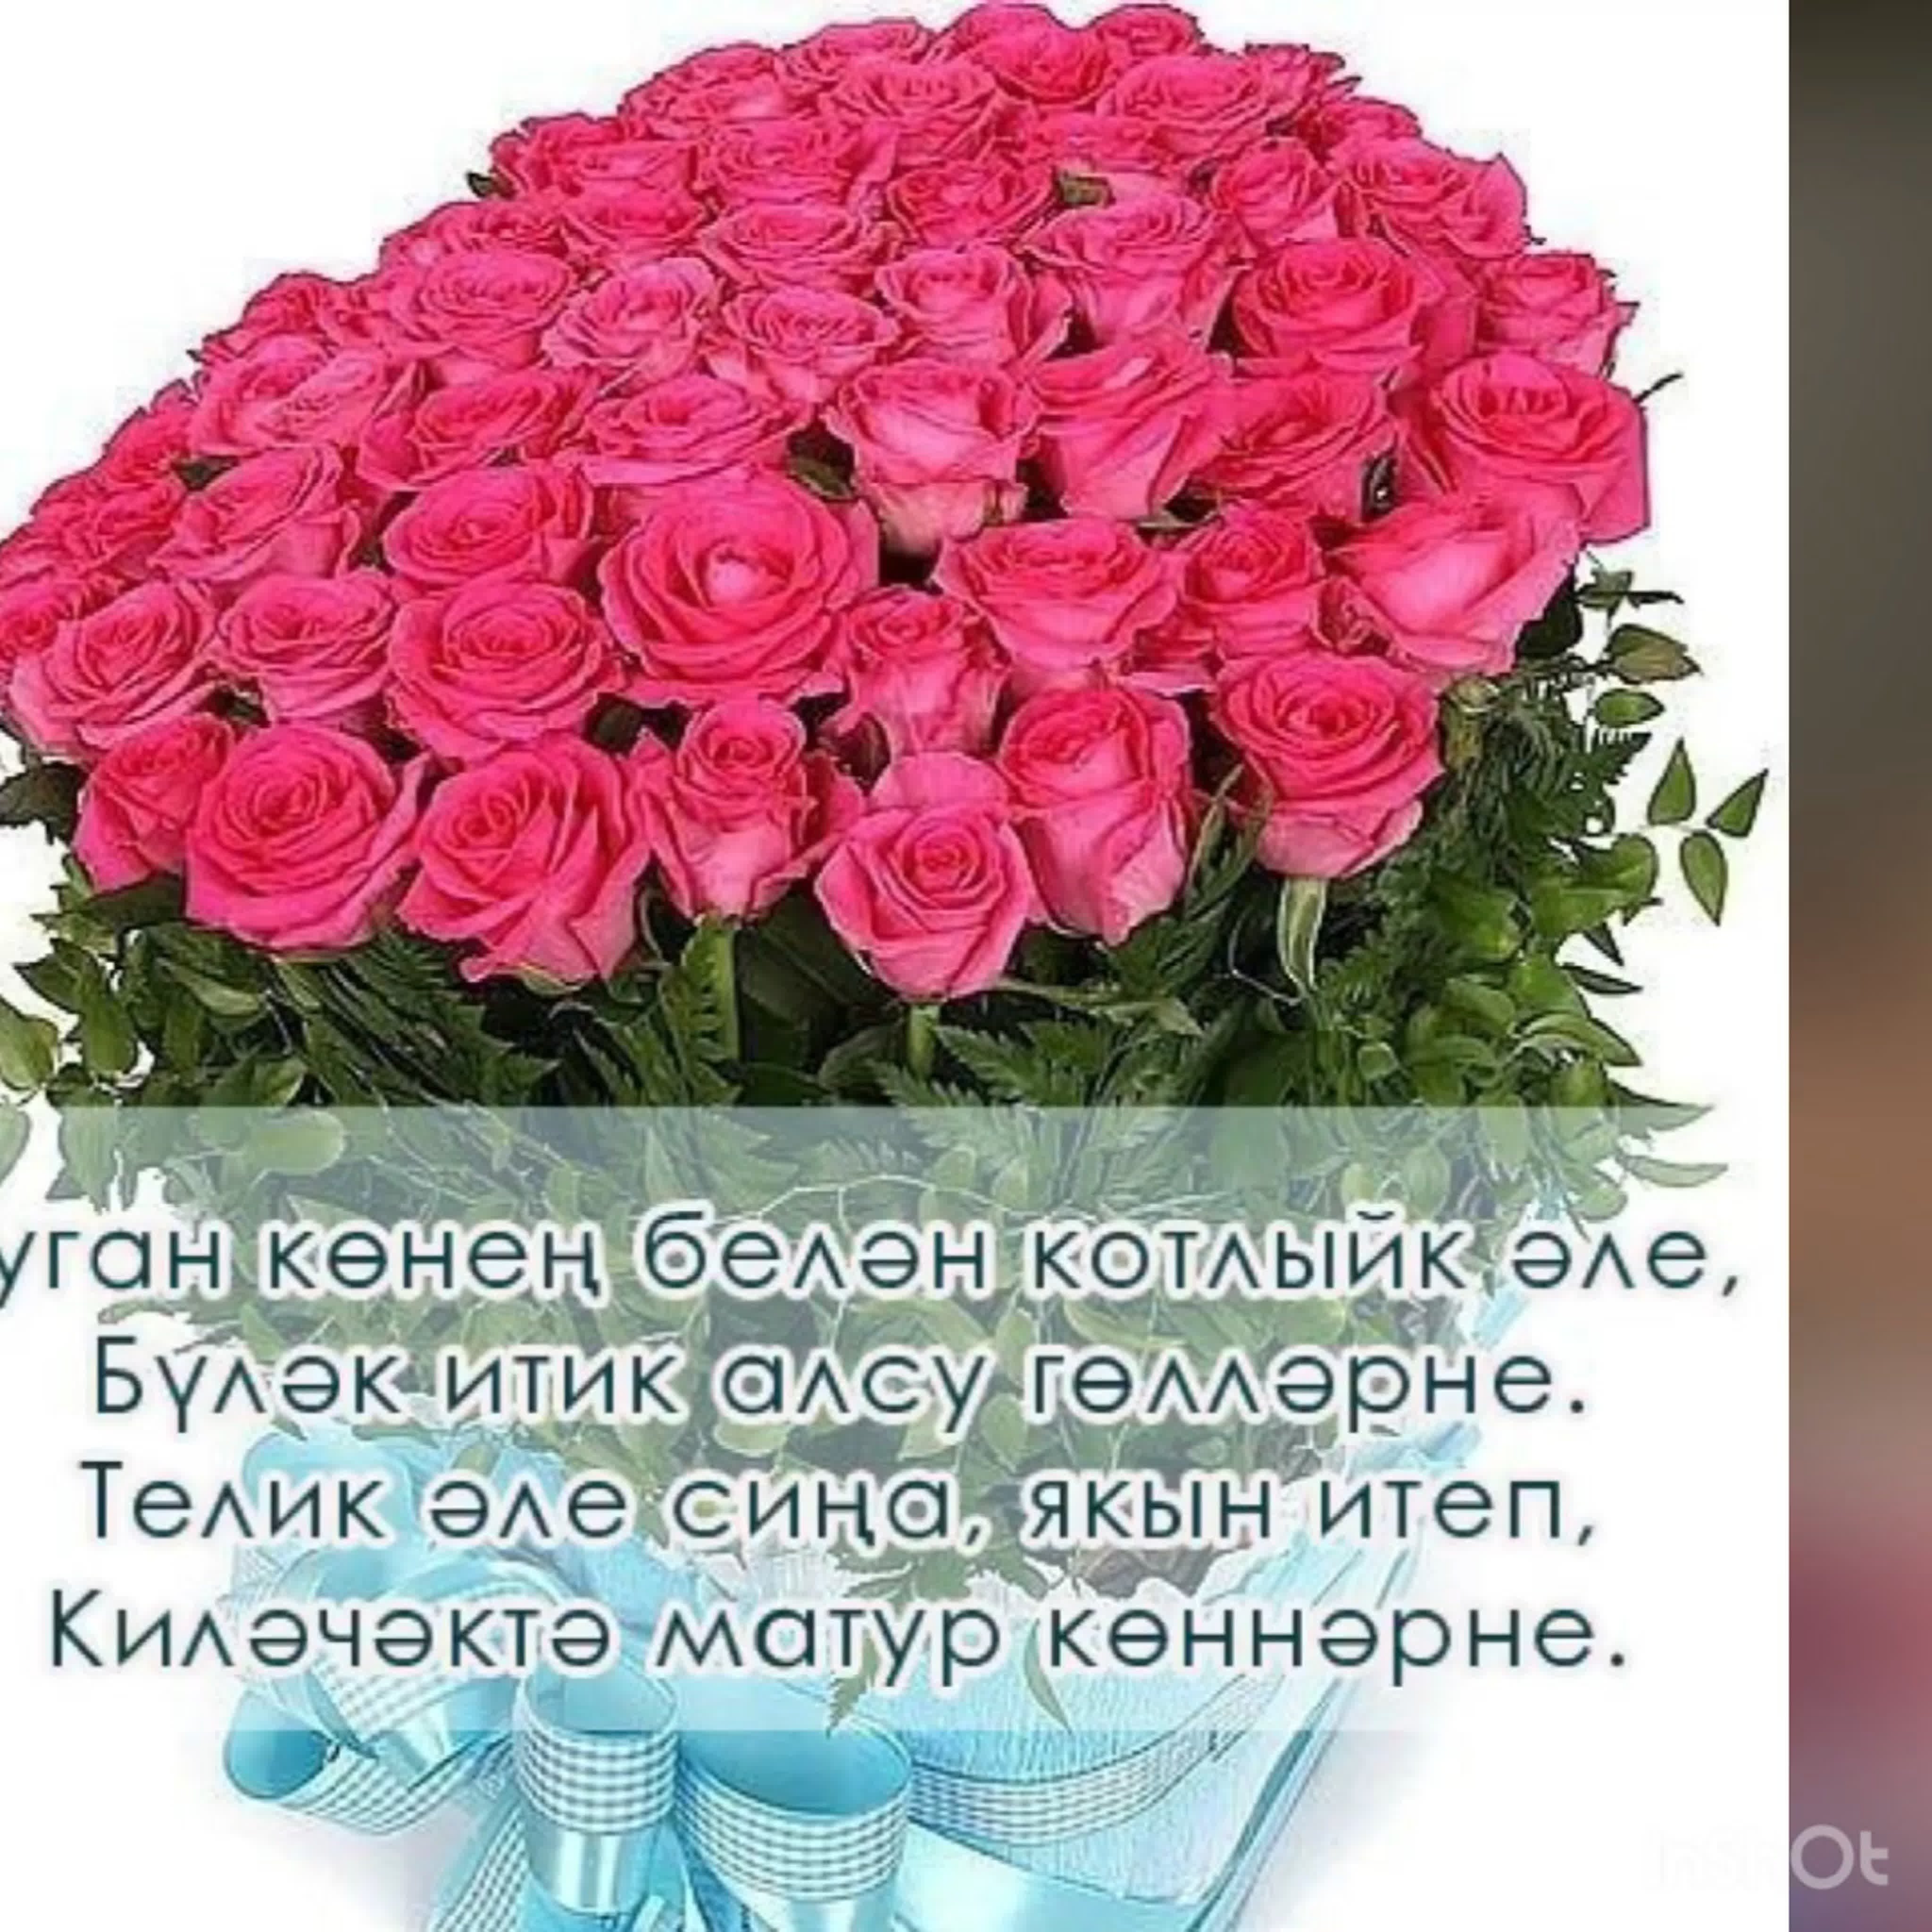 С днем рождения апа татарский. Поздравления с днём рождения на татарском языке. Поздравления с днём рождения женщине на татарском языке. Поздравления с днём рождения женщине на татарском. Поздравления с днём рождения женщине на татарском я.